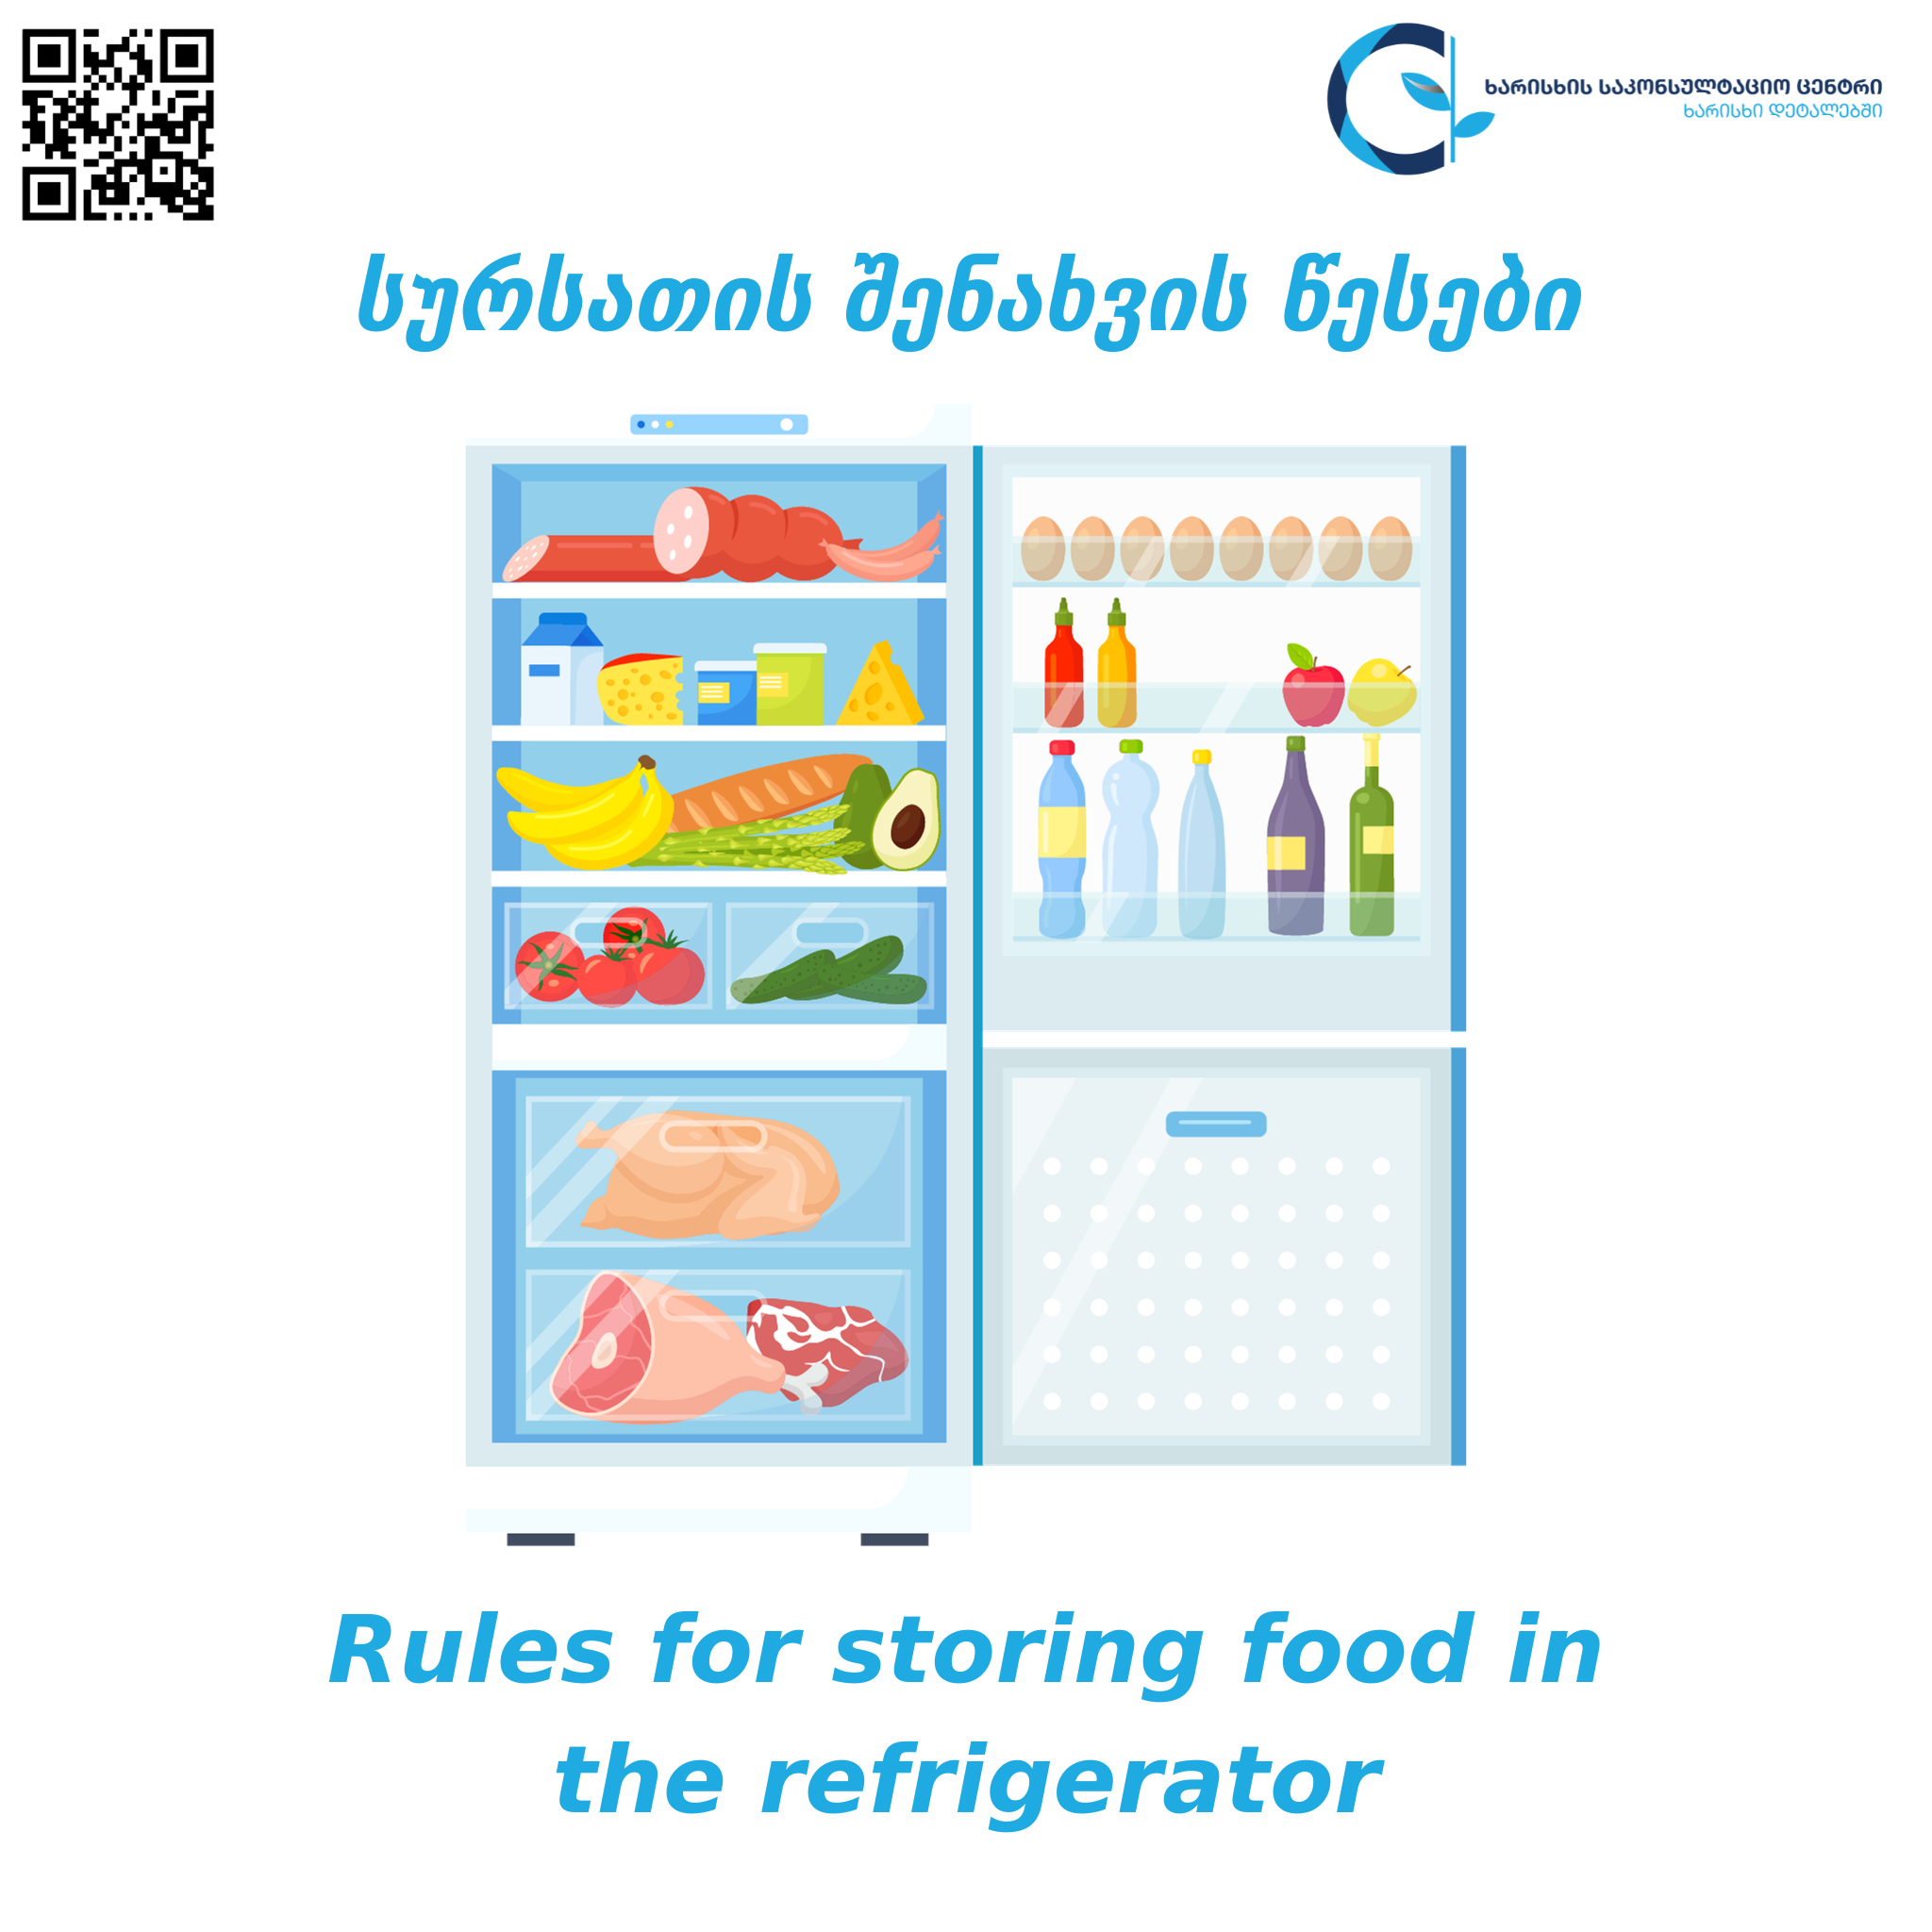 Food storage rules